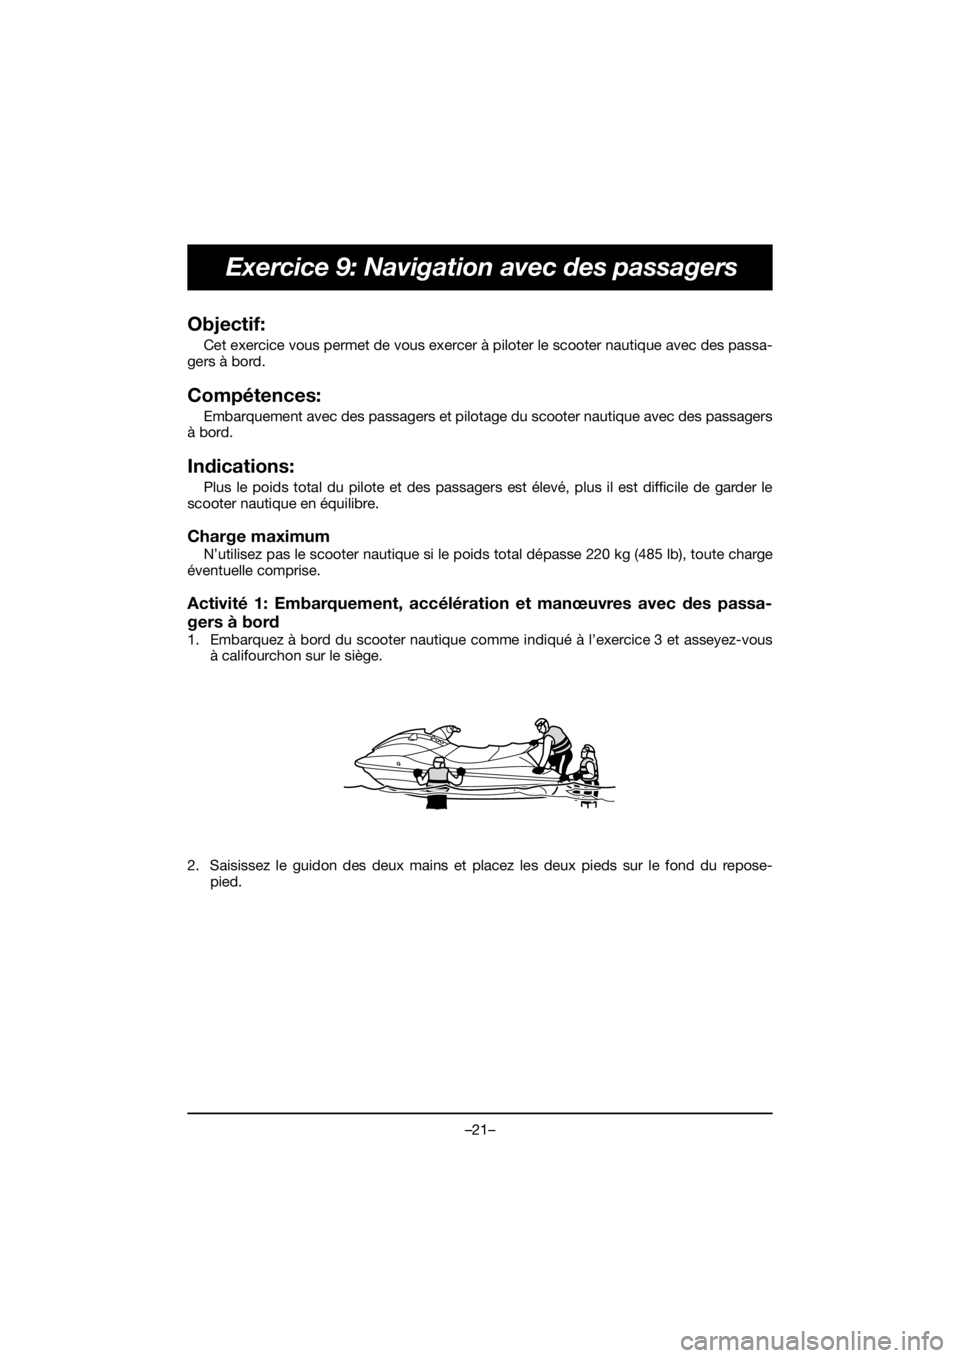 YAMAHA EX 2020  Manual de utilização (in Portuguese) –21–
Exercice 9: Navigation avec des passagers
Objectif: 
Cet exercice vous permet de vous exercer à piloter le scooter nautique avec des passa-
gers à bord.
Compétences: 
Embarquement avec des